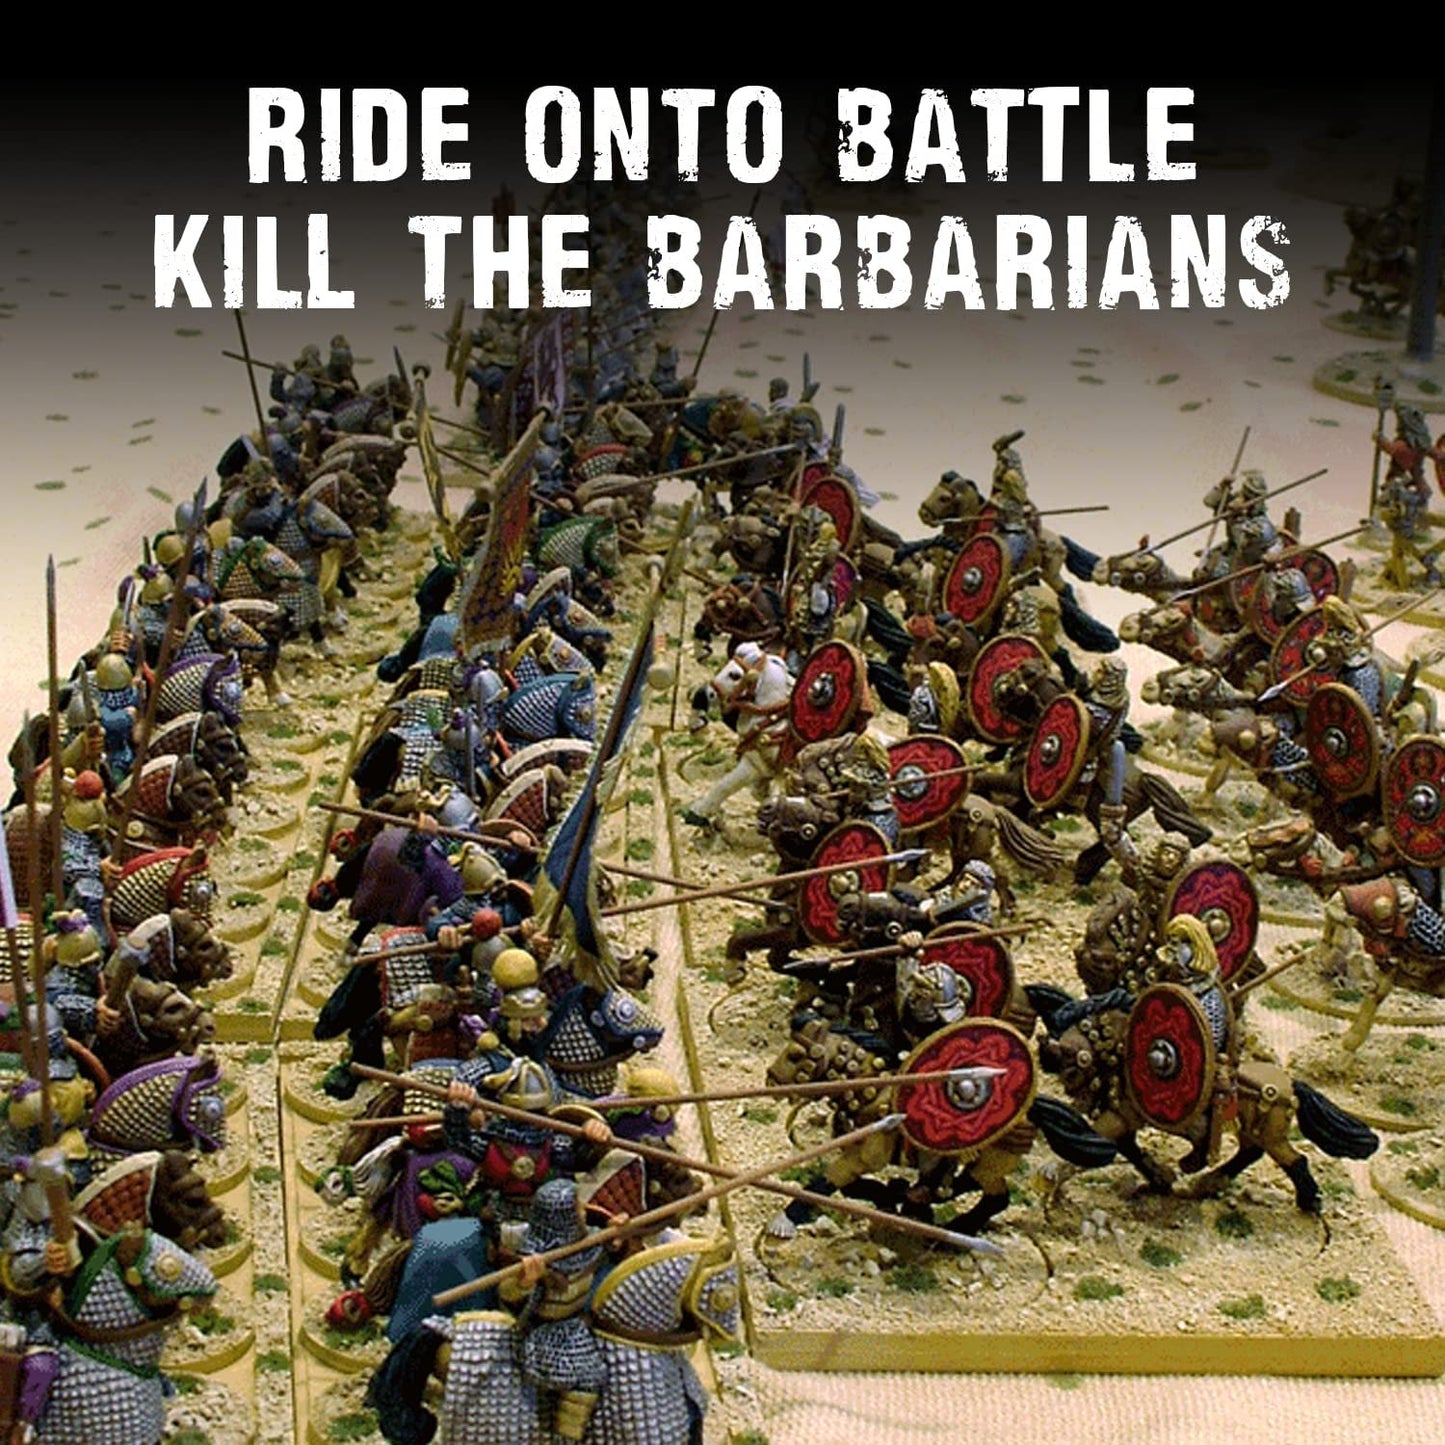 SPQR - Caesar's Legions: Roman Cavalry